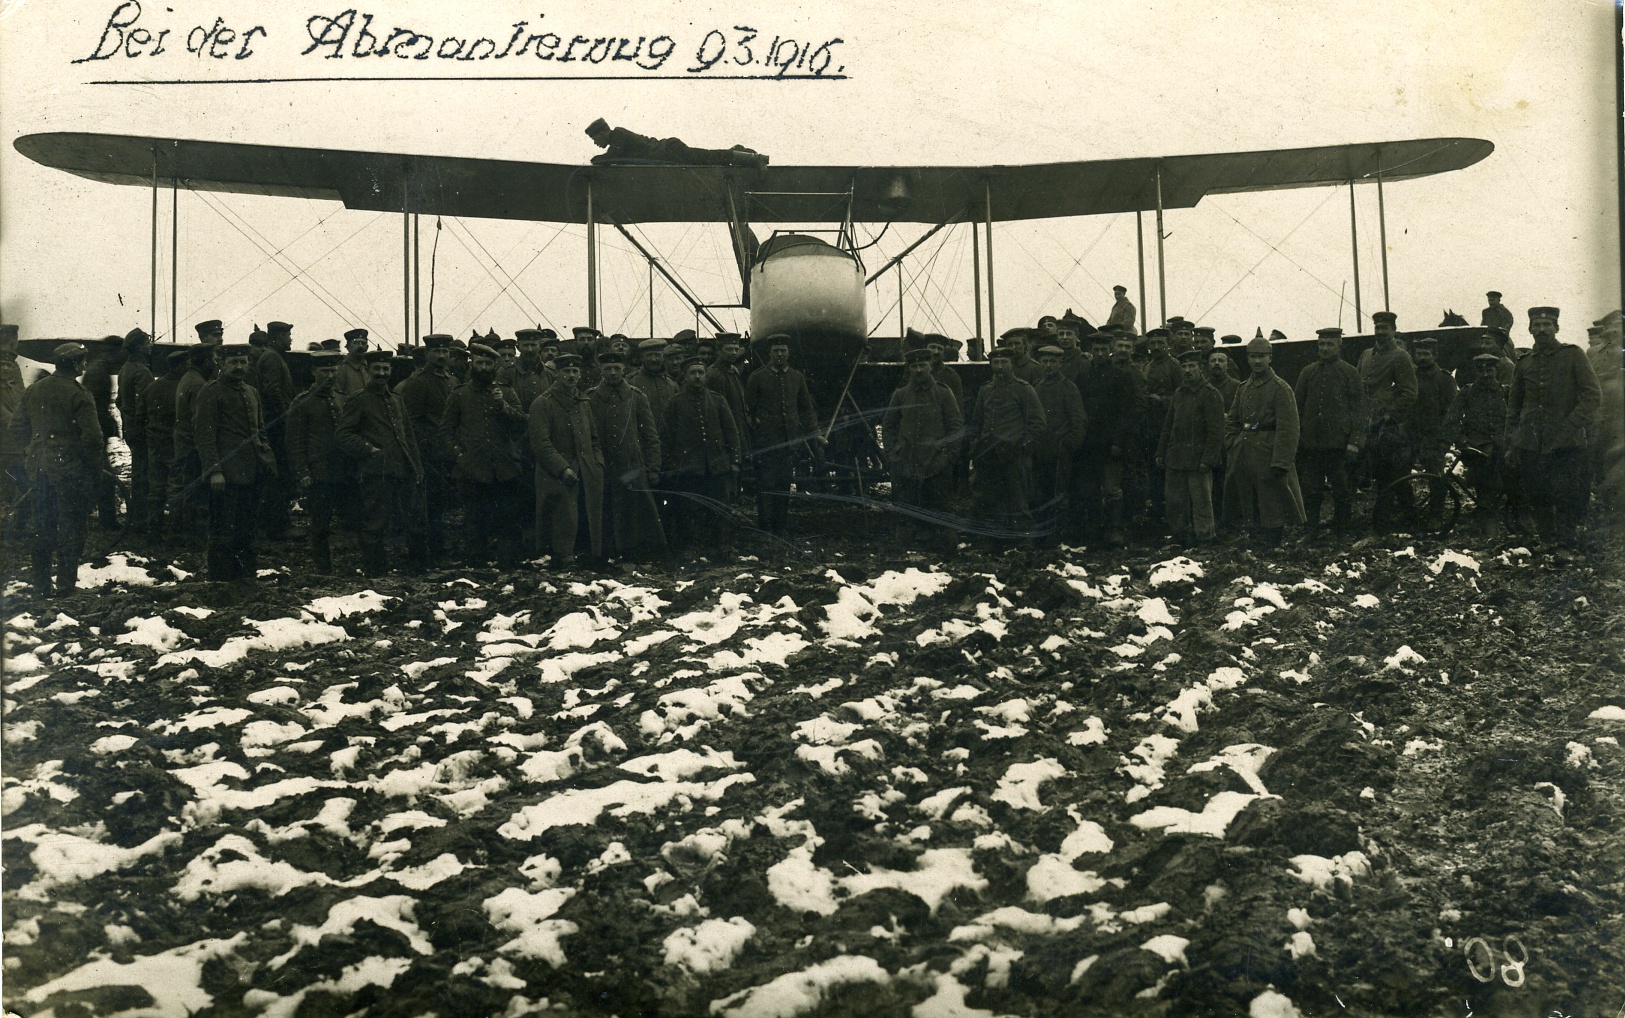 Fotopostkarte "Abgeschossenes engl. Flugzeug" (Historisches Museum der Pfalz, Speyer CC BY)